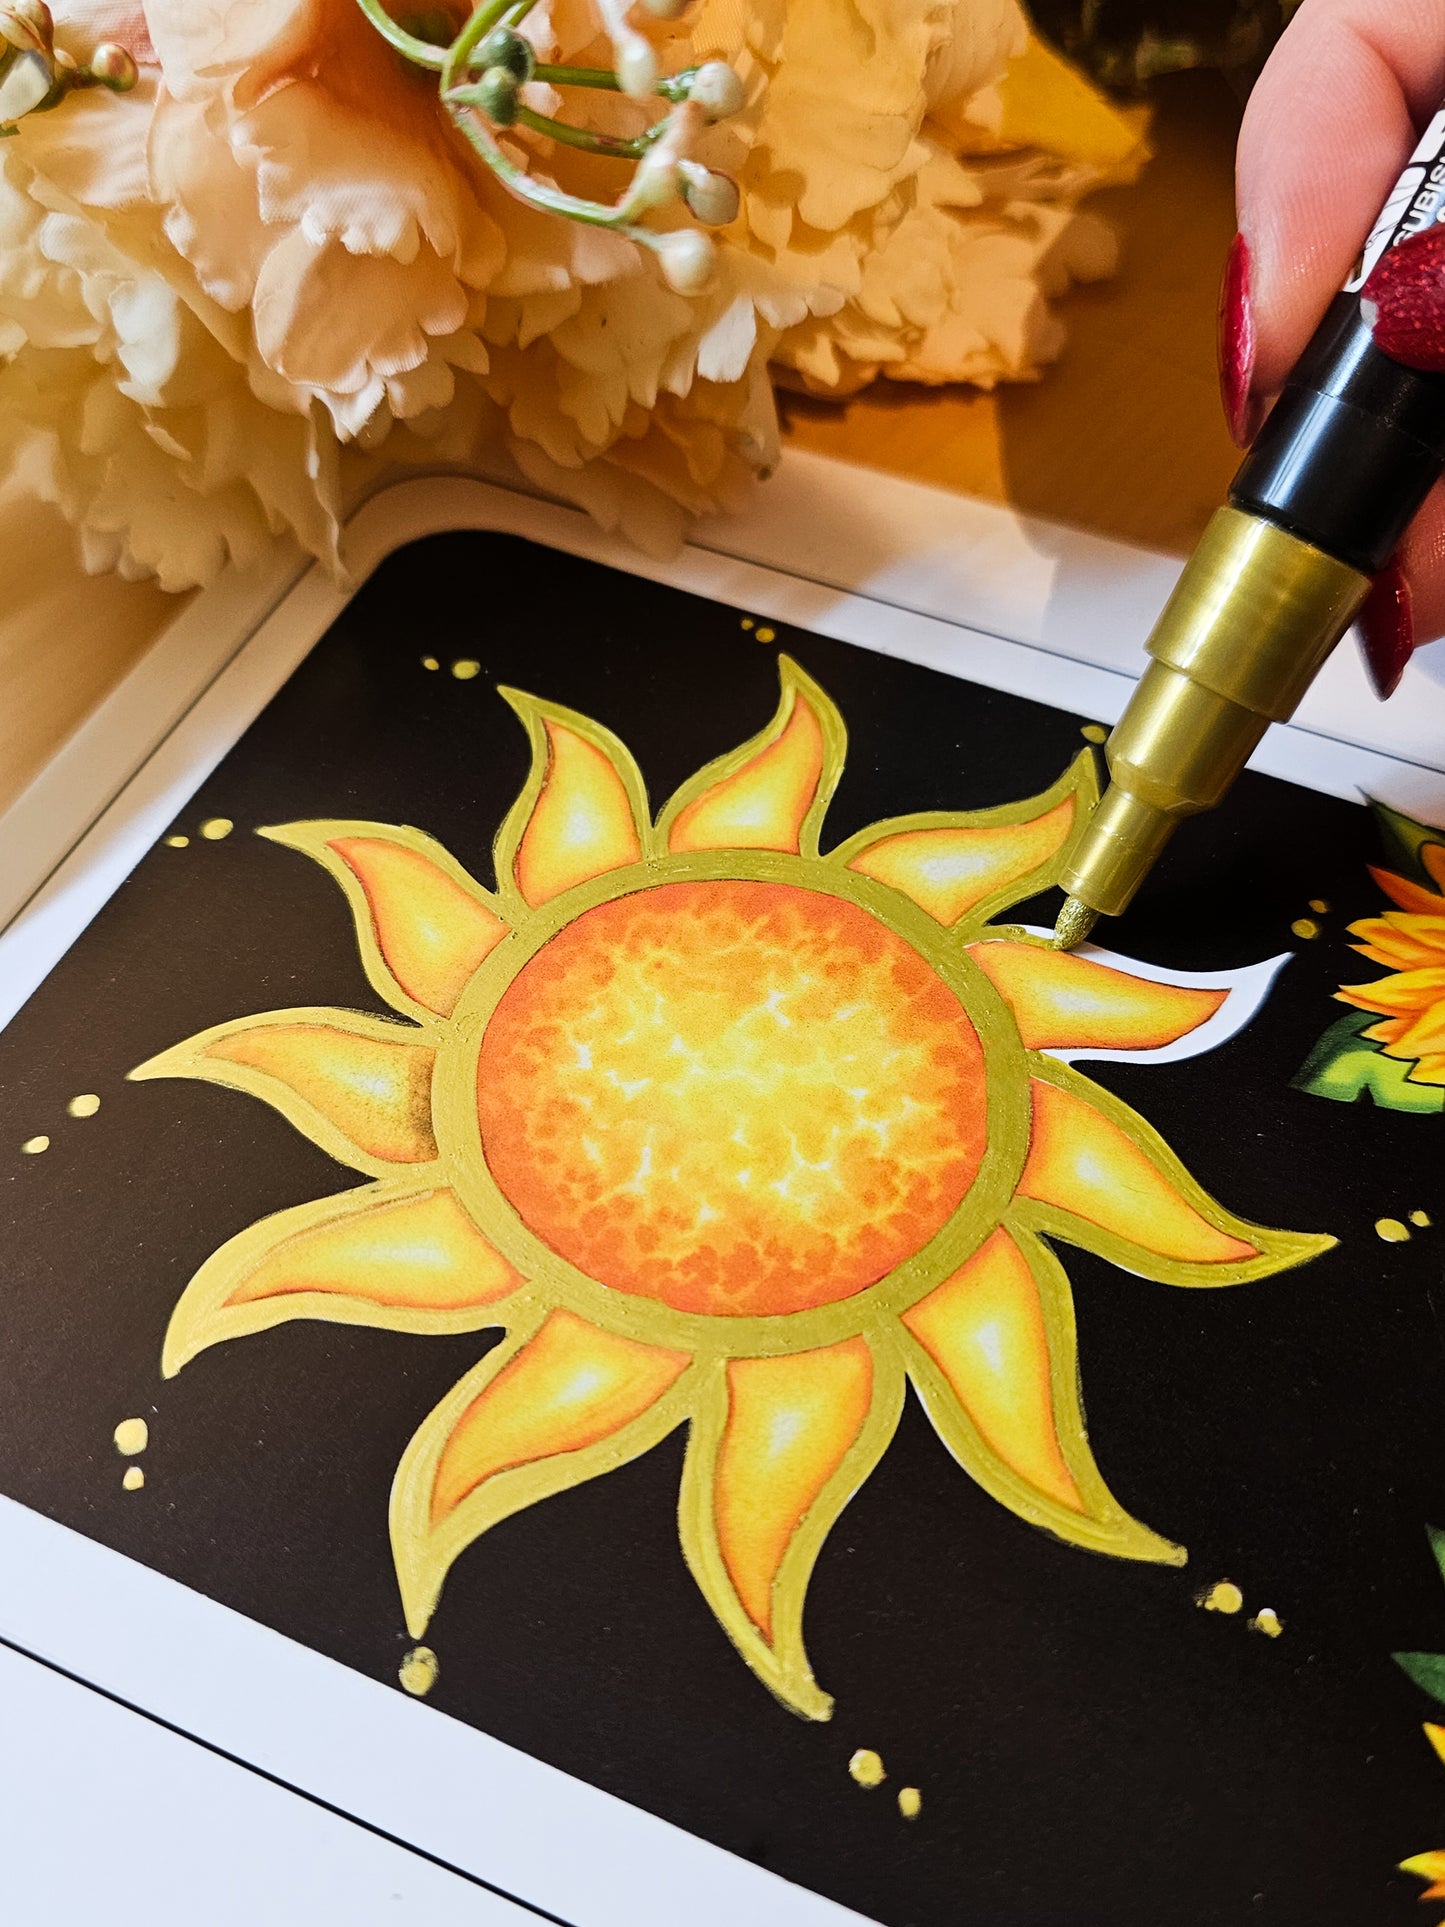 "The Sun" Tarot Card